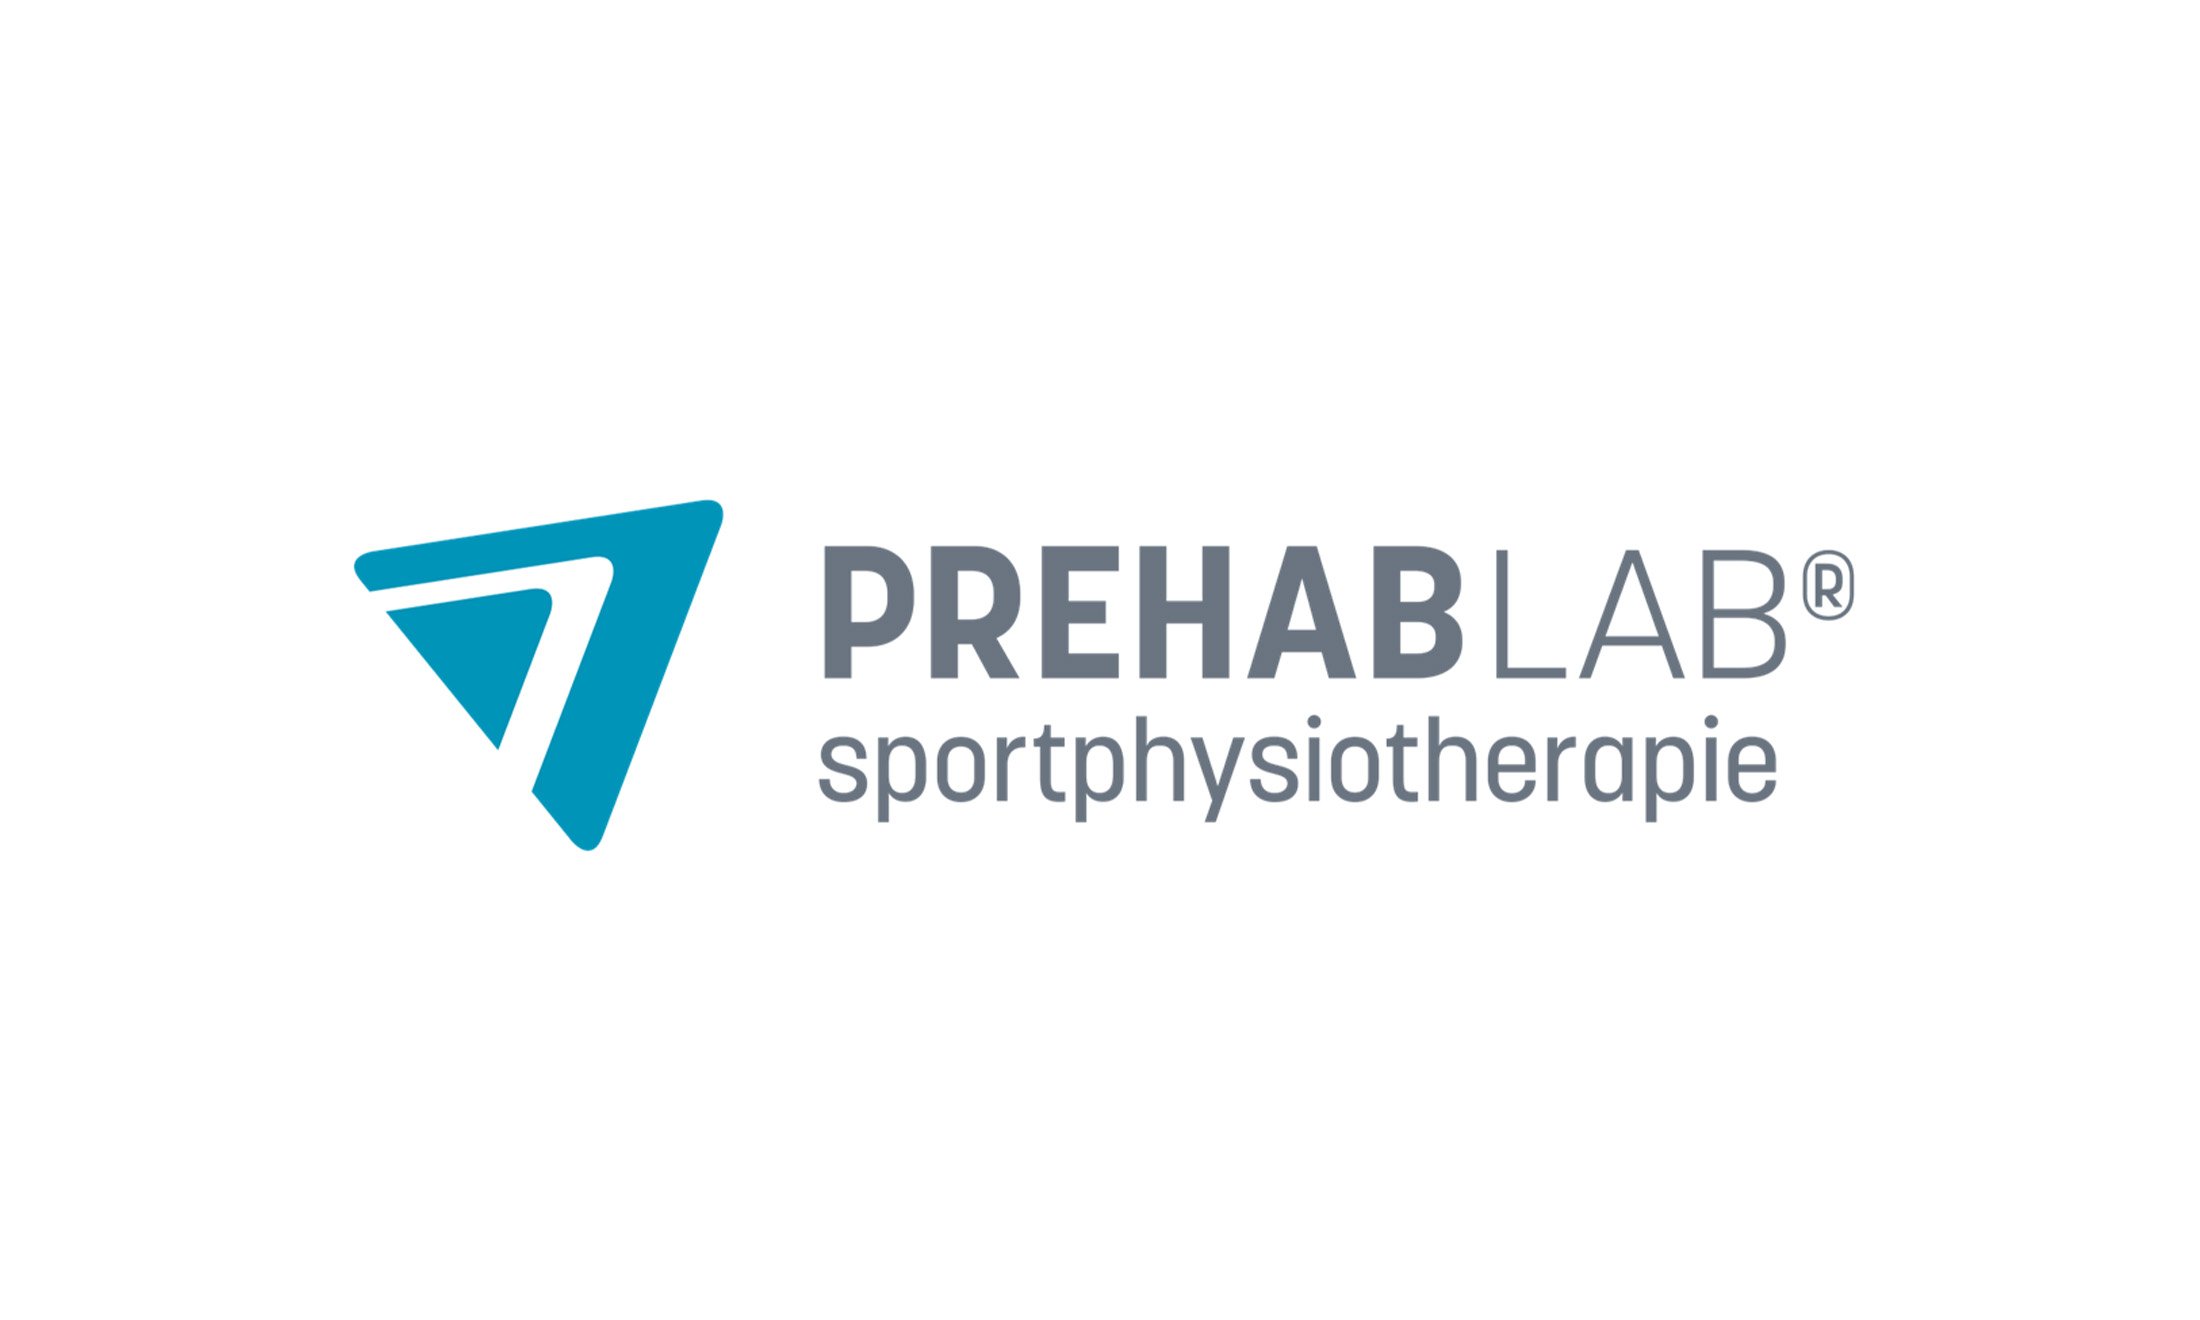 Prehab-lab